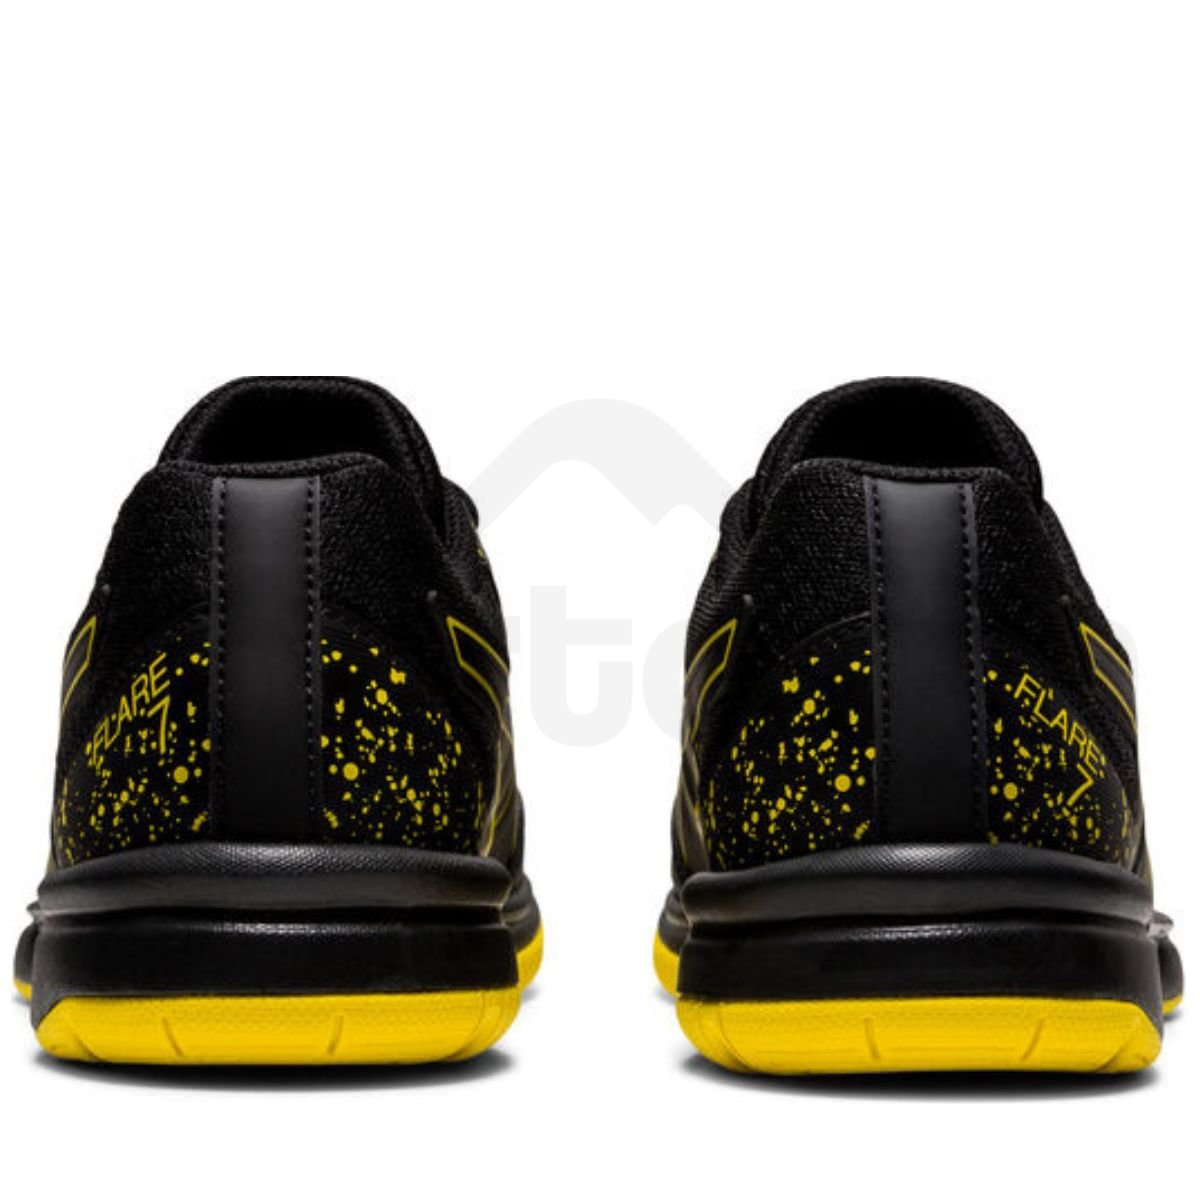 Dámská halová obuv Asics Flare 7 GS - černá/žlutá